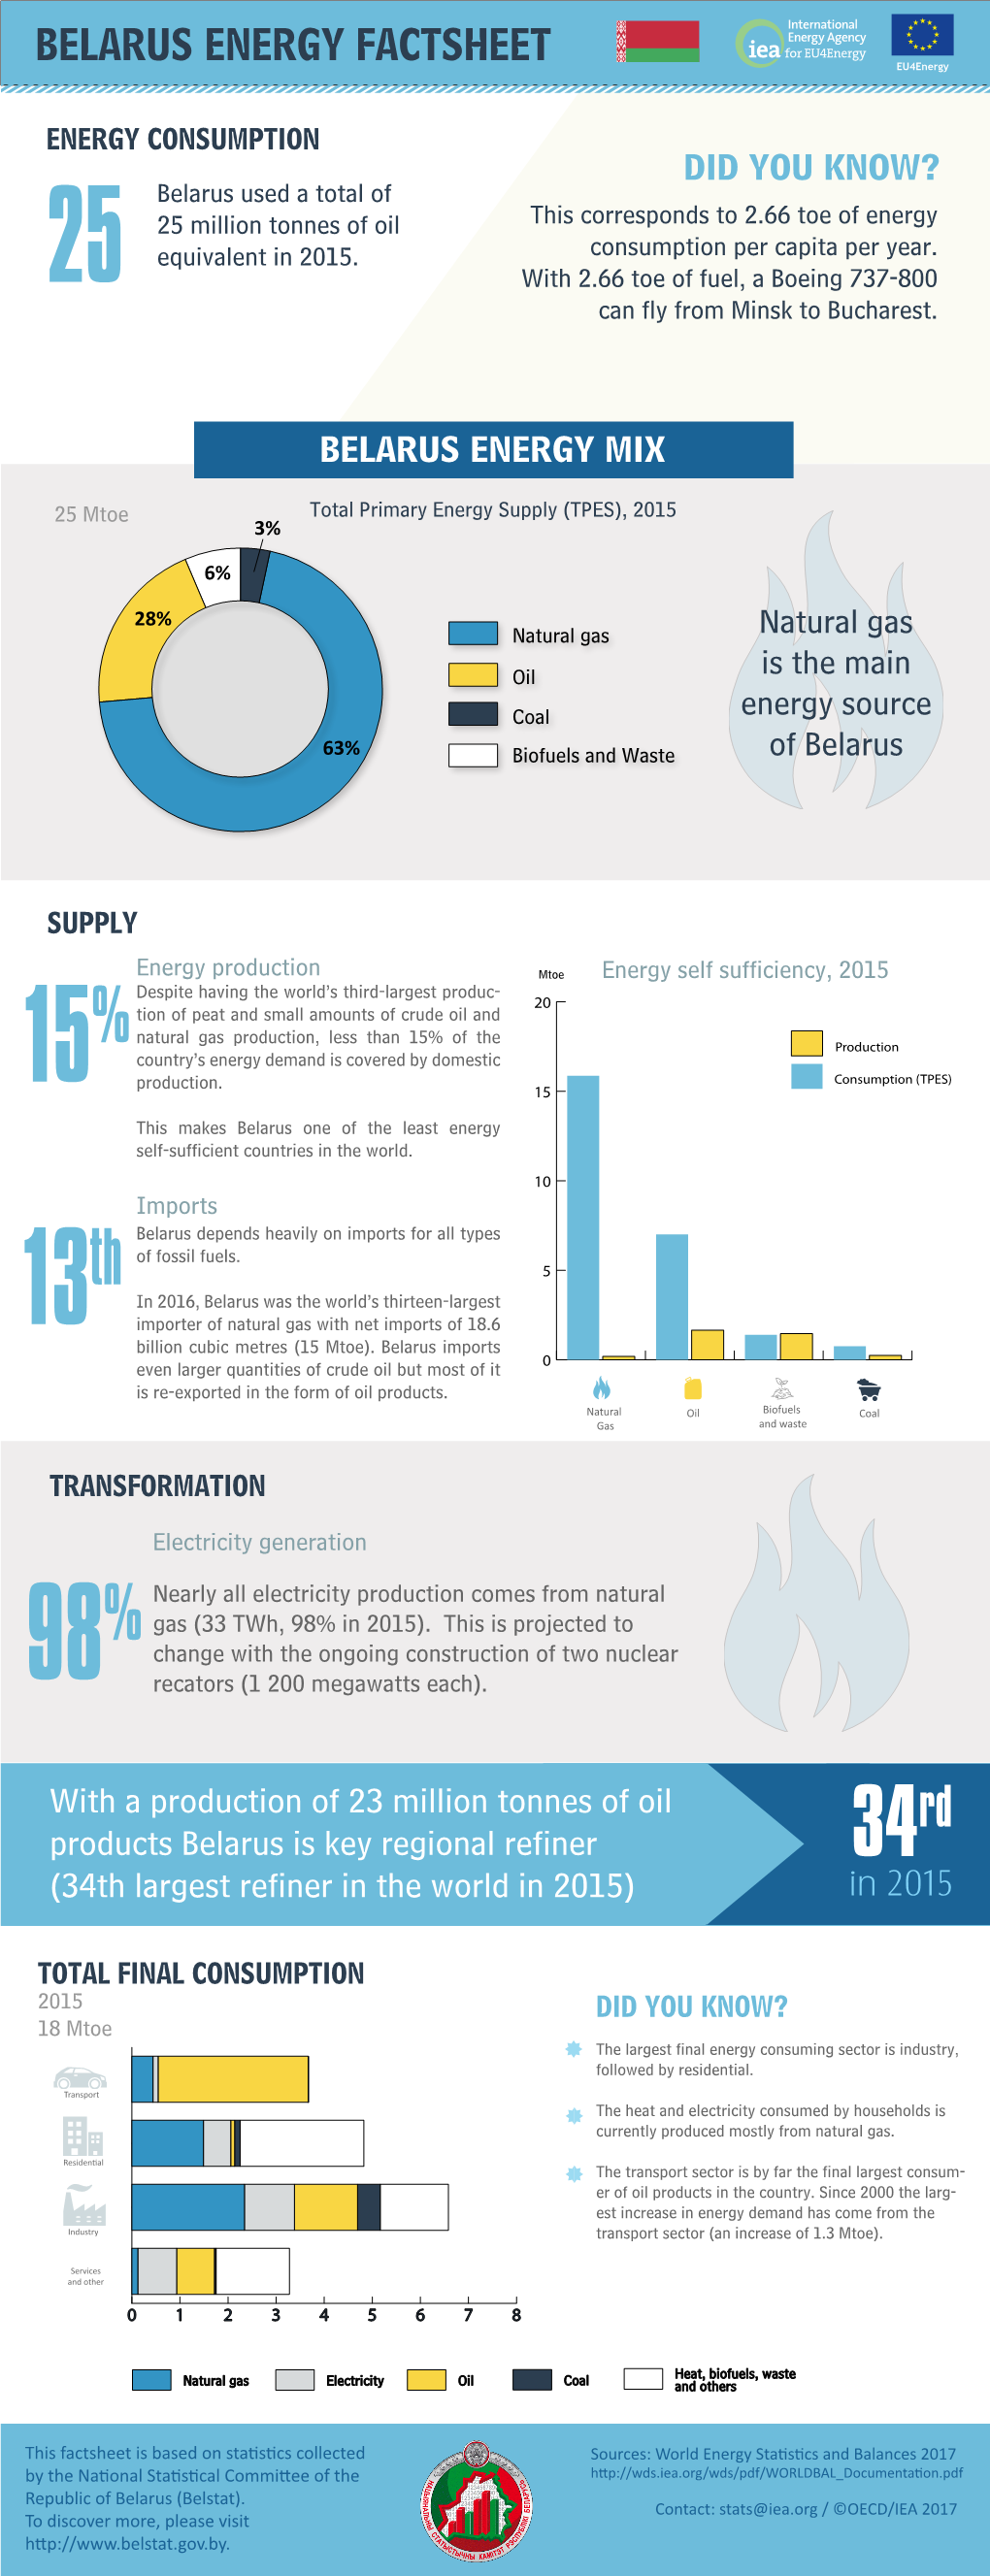 BELARUS ENERGY FACTSHEET in 2015